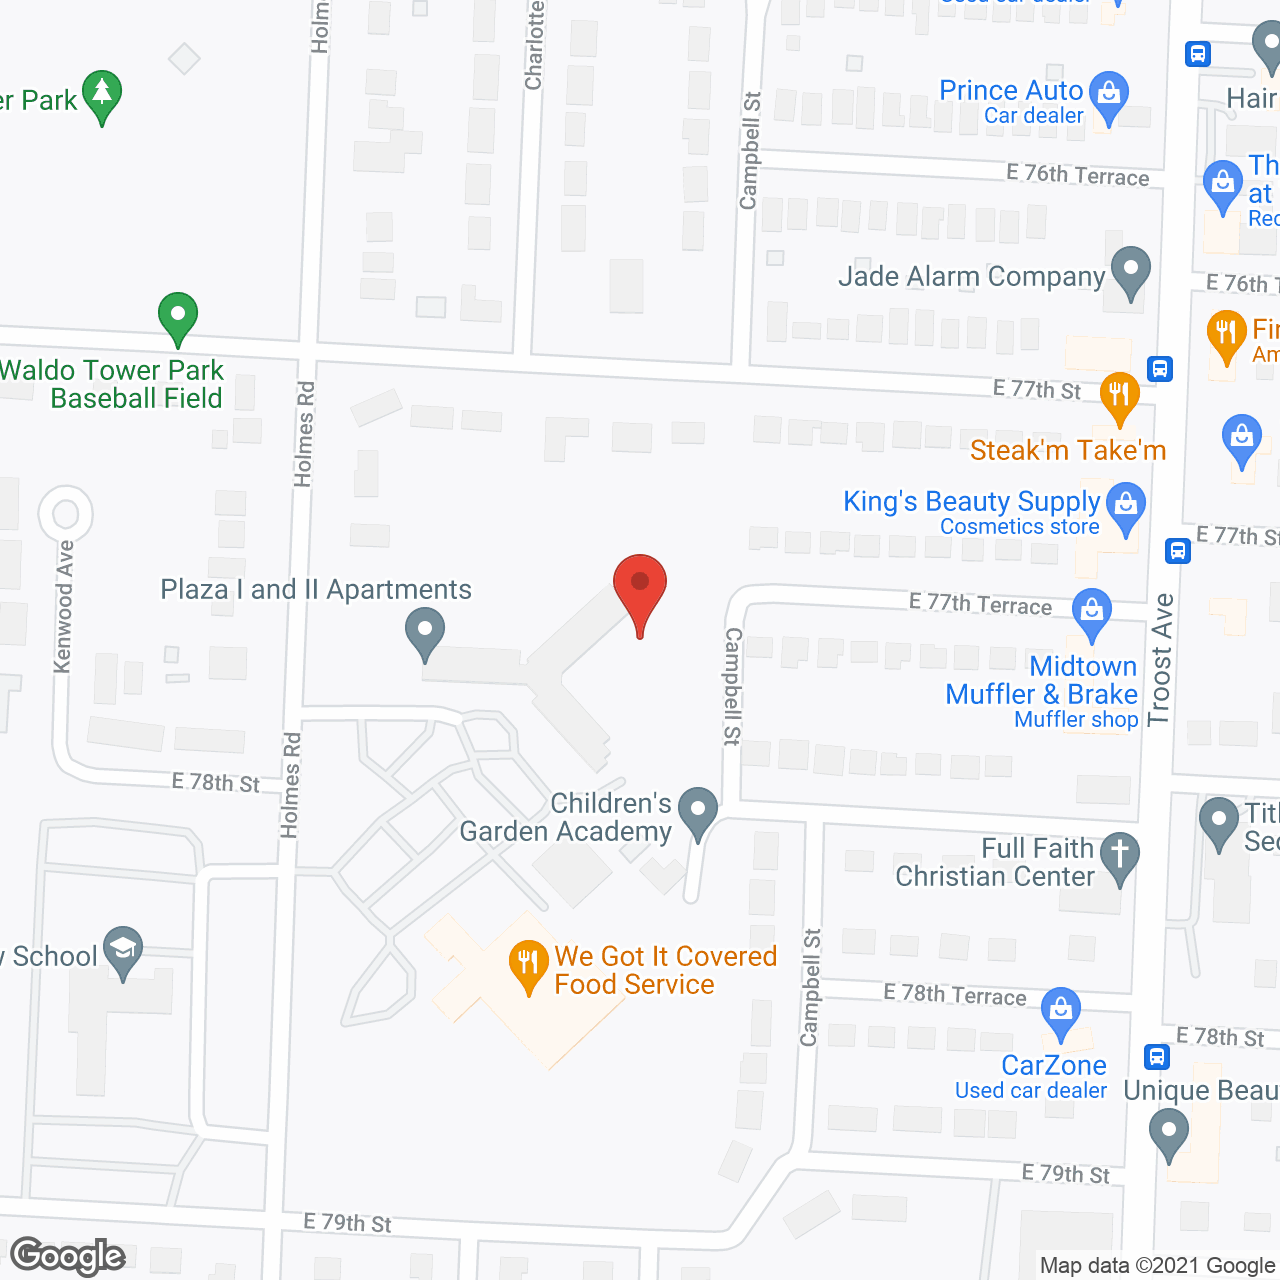 Plaza l & ll Apts in google map